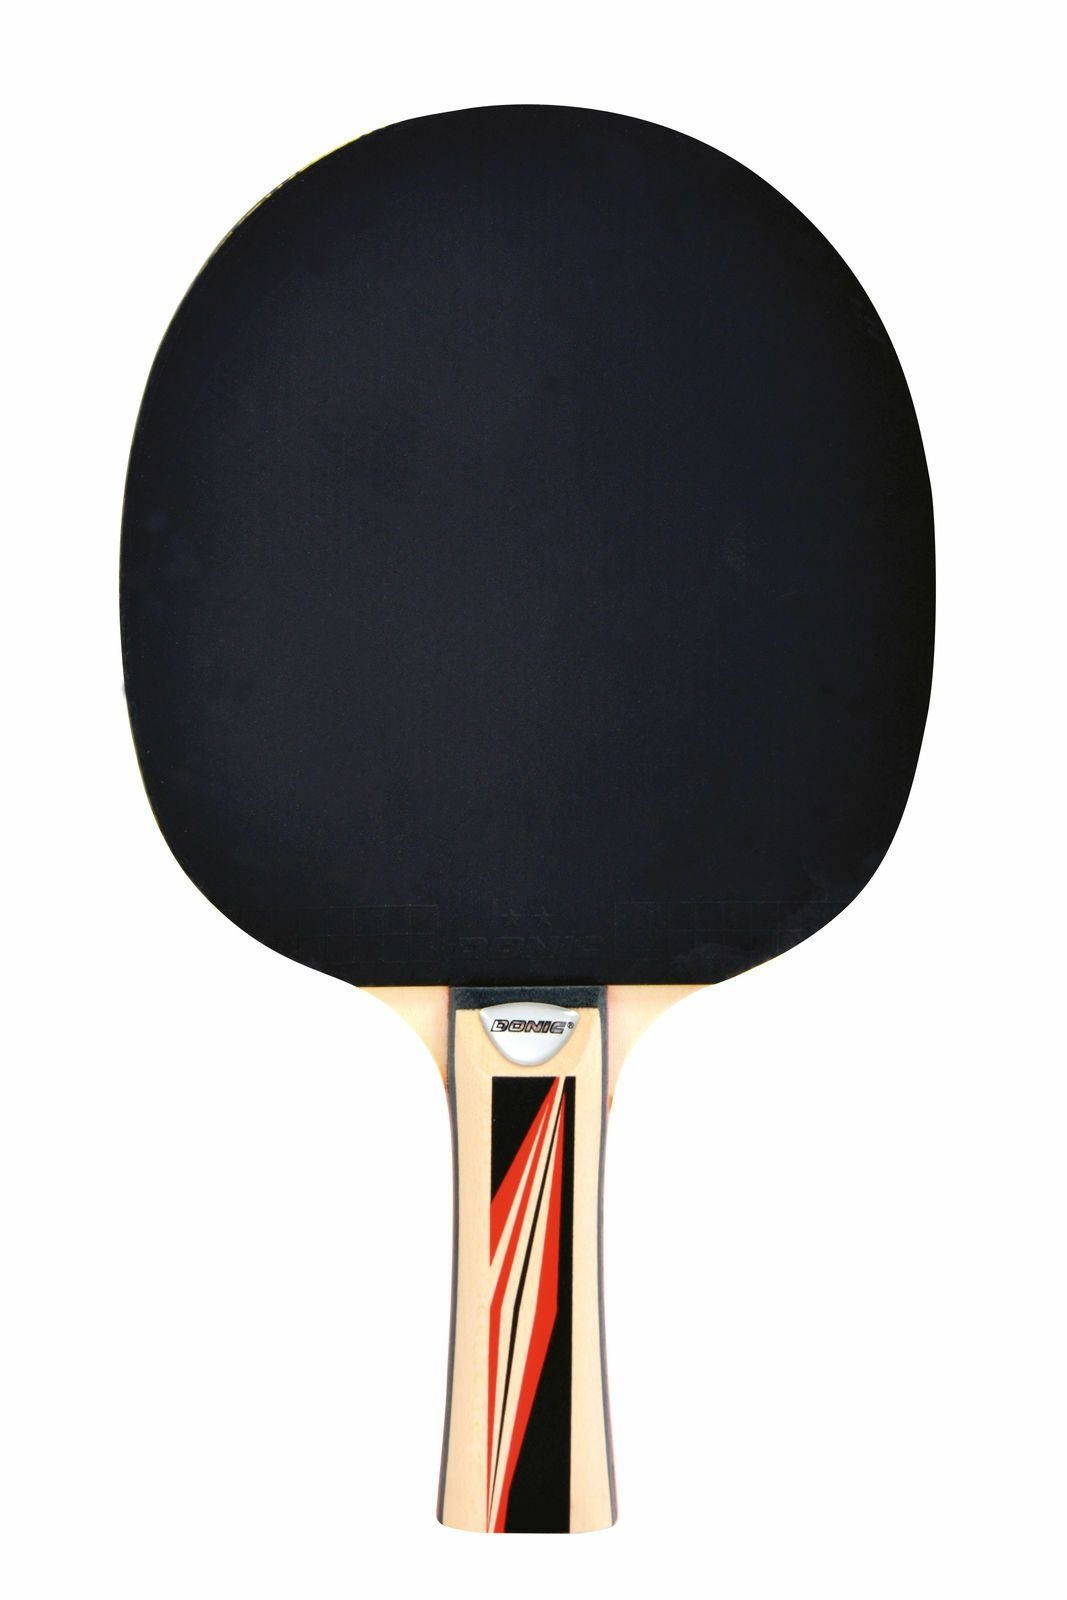 Donic-Schildkröt Table Tischtennis Tennis Schläger Racket 600, Top Bat Tischtennisschläger Team